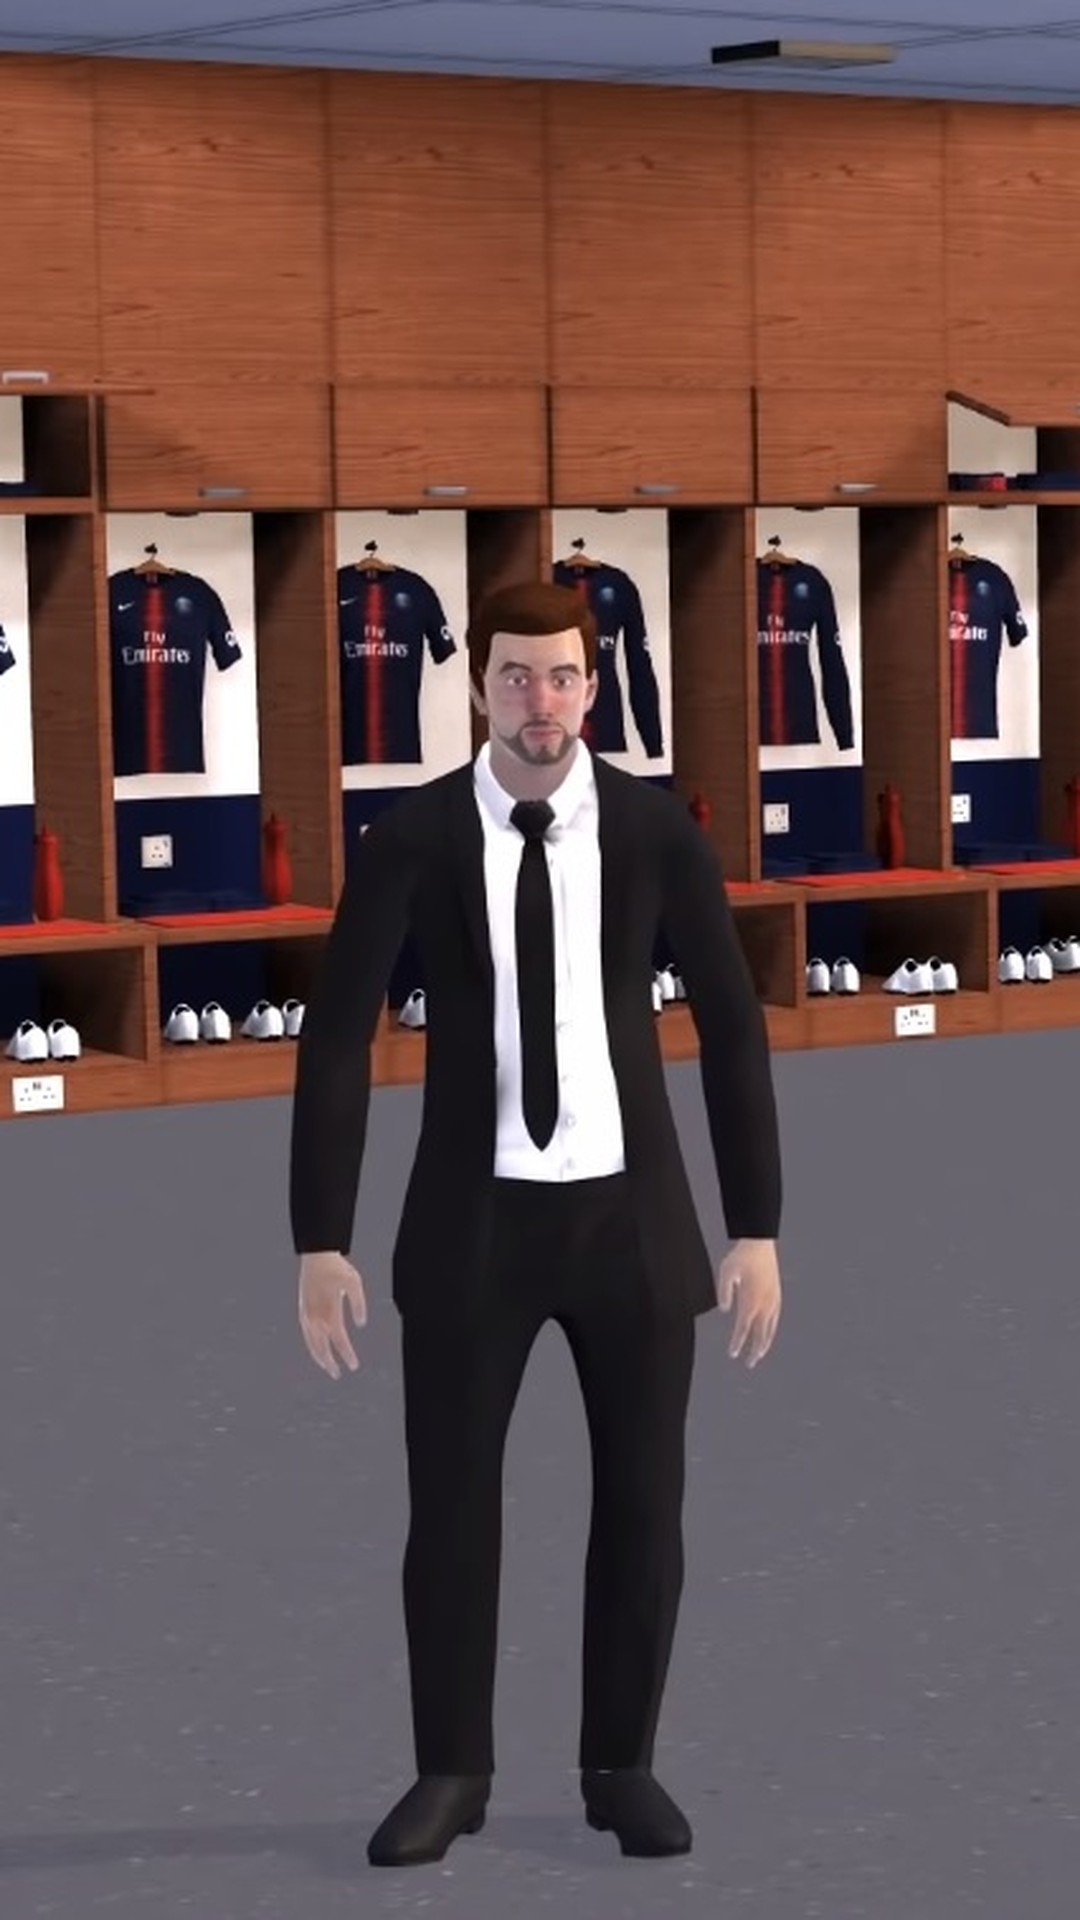 Football Manager 2019: requisitos do simulador de futebol para PC